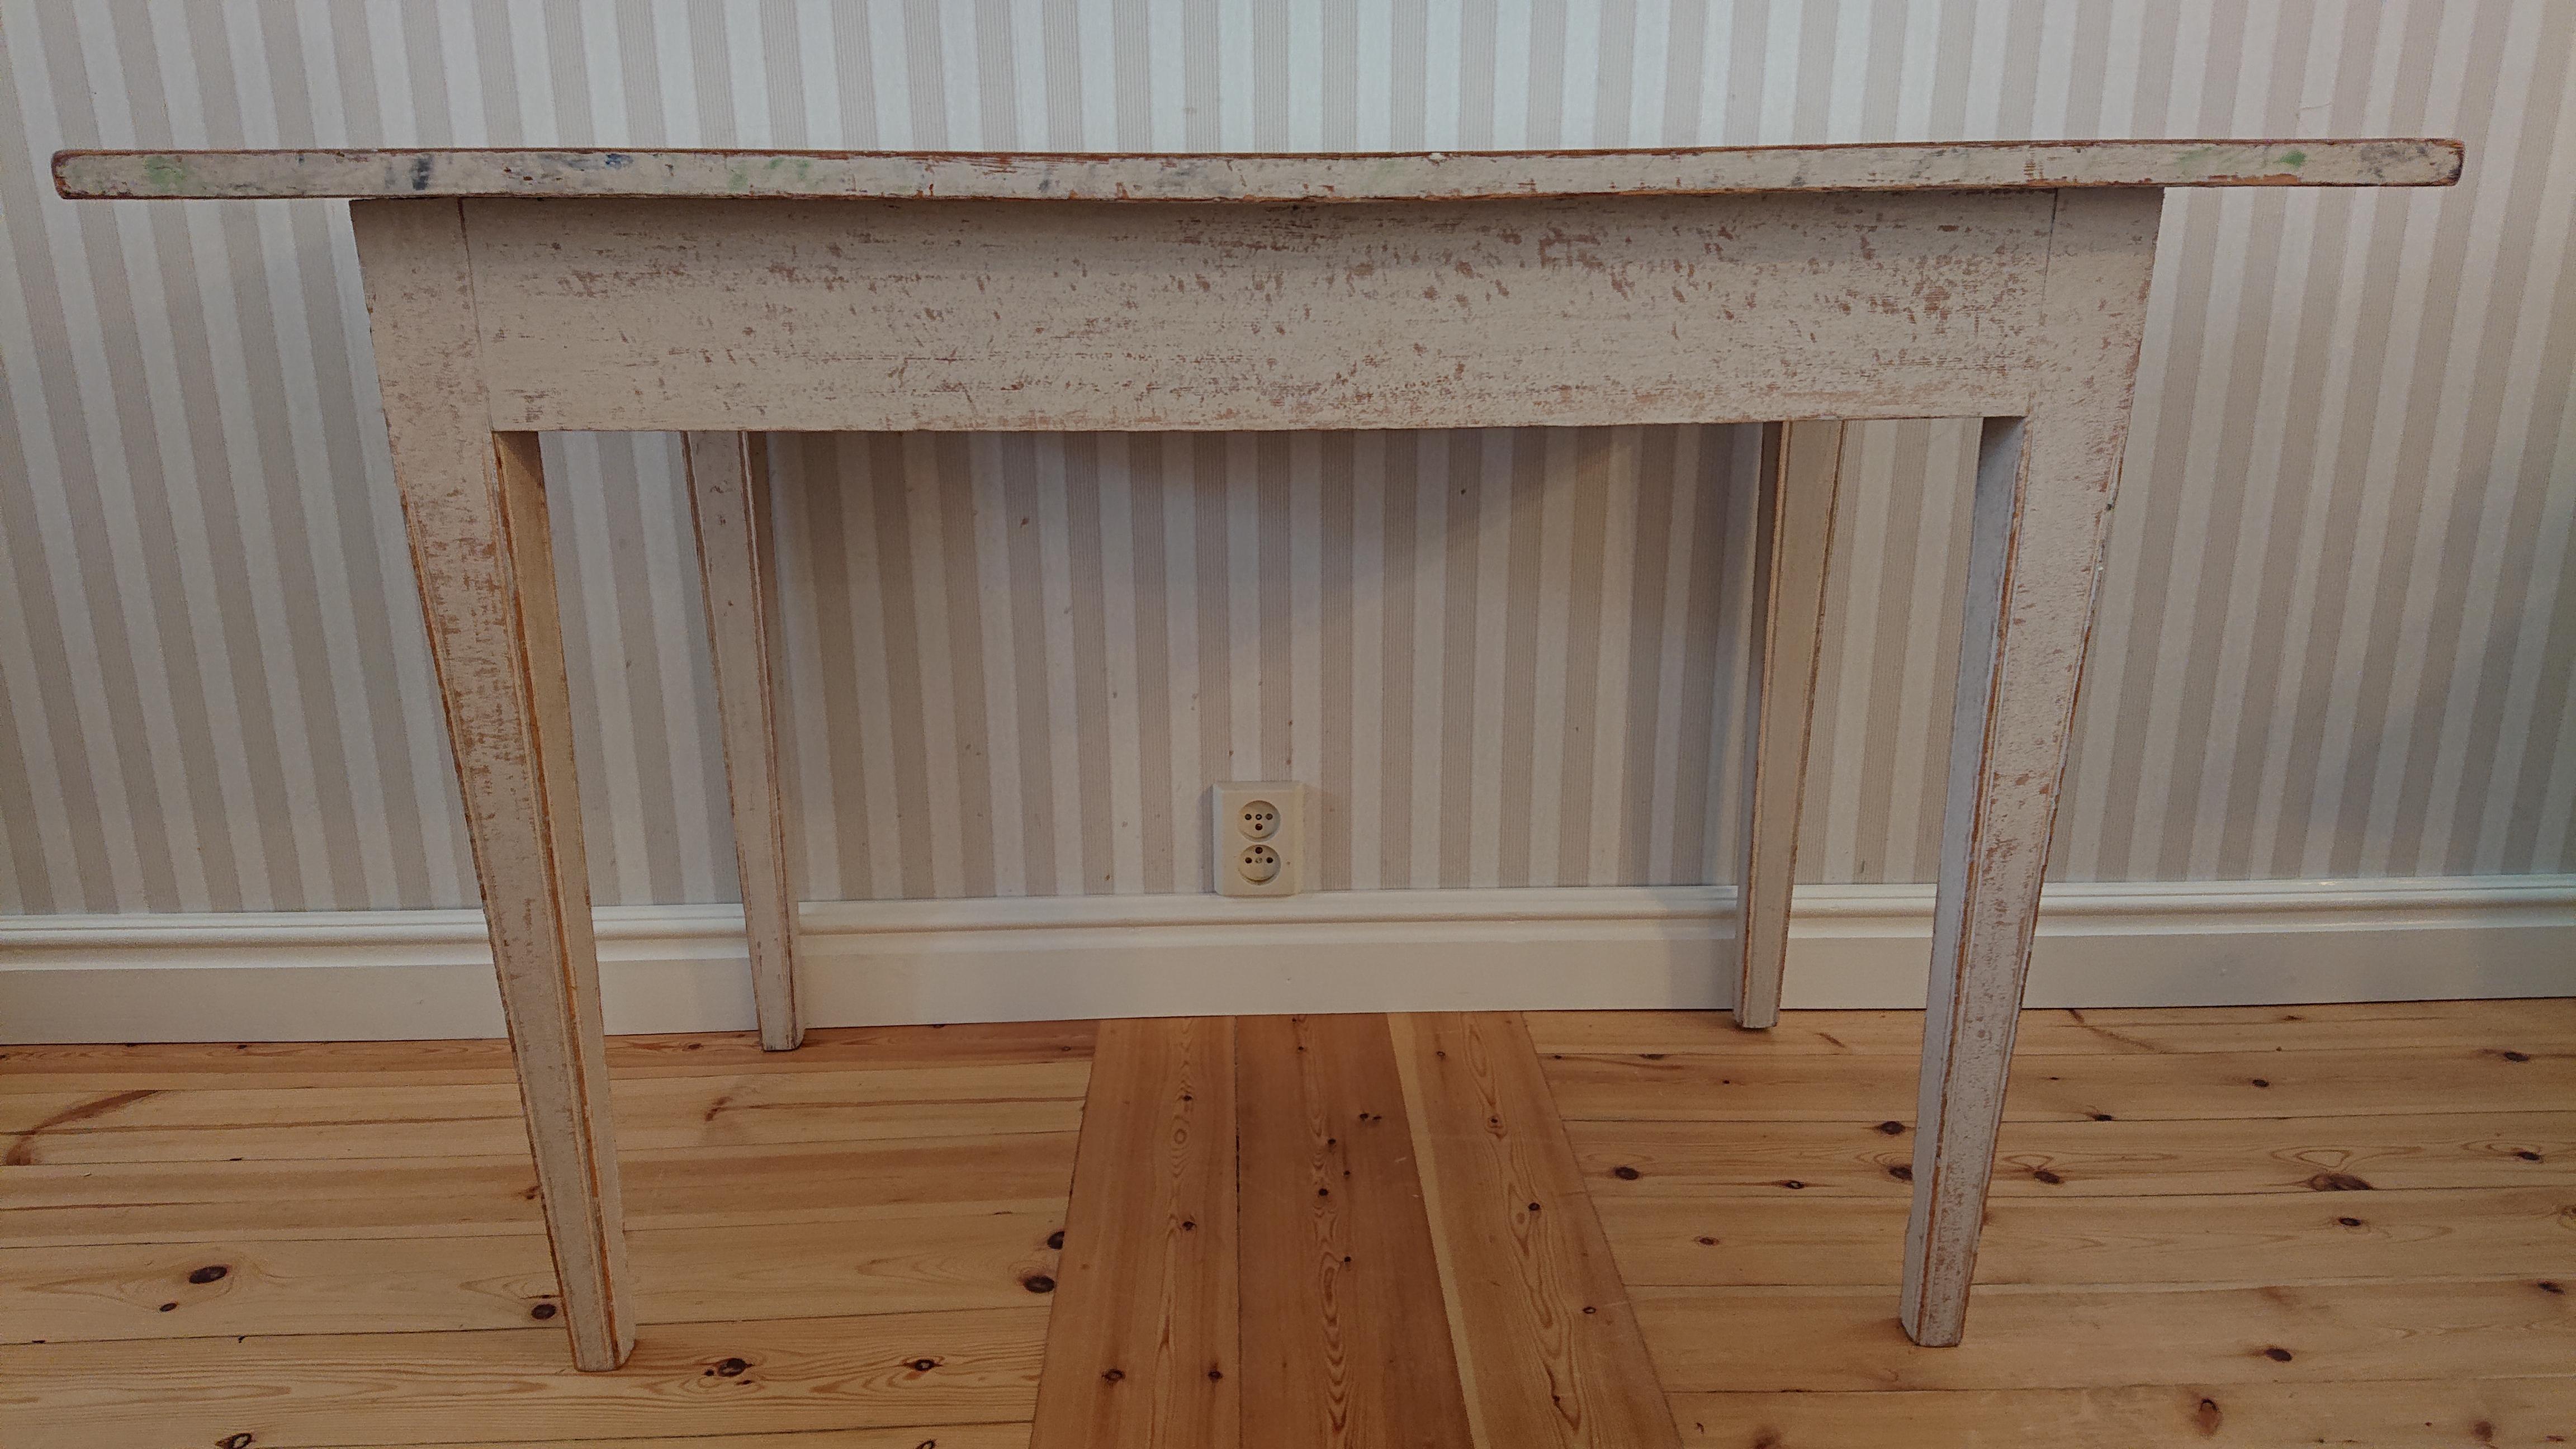 table gustavienne suédoise du 19ème siècle provenant de Boden Norrbotten, nord de la Suède.
Jolie petite table soignée, grattée à la main jusqu'à sa peinture d'origine.
Traces de peinture au marbre sur le dessus.
La table est facile à placer et